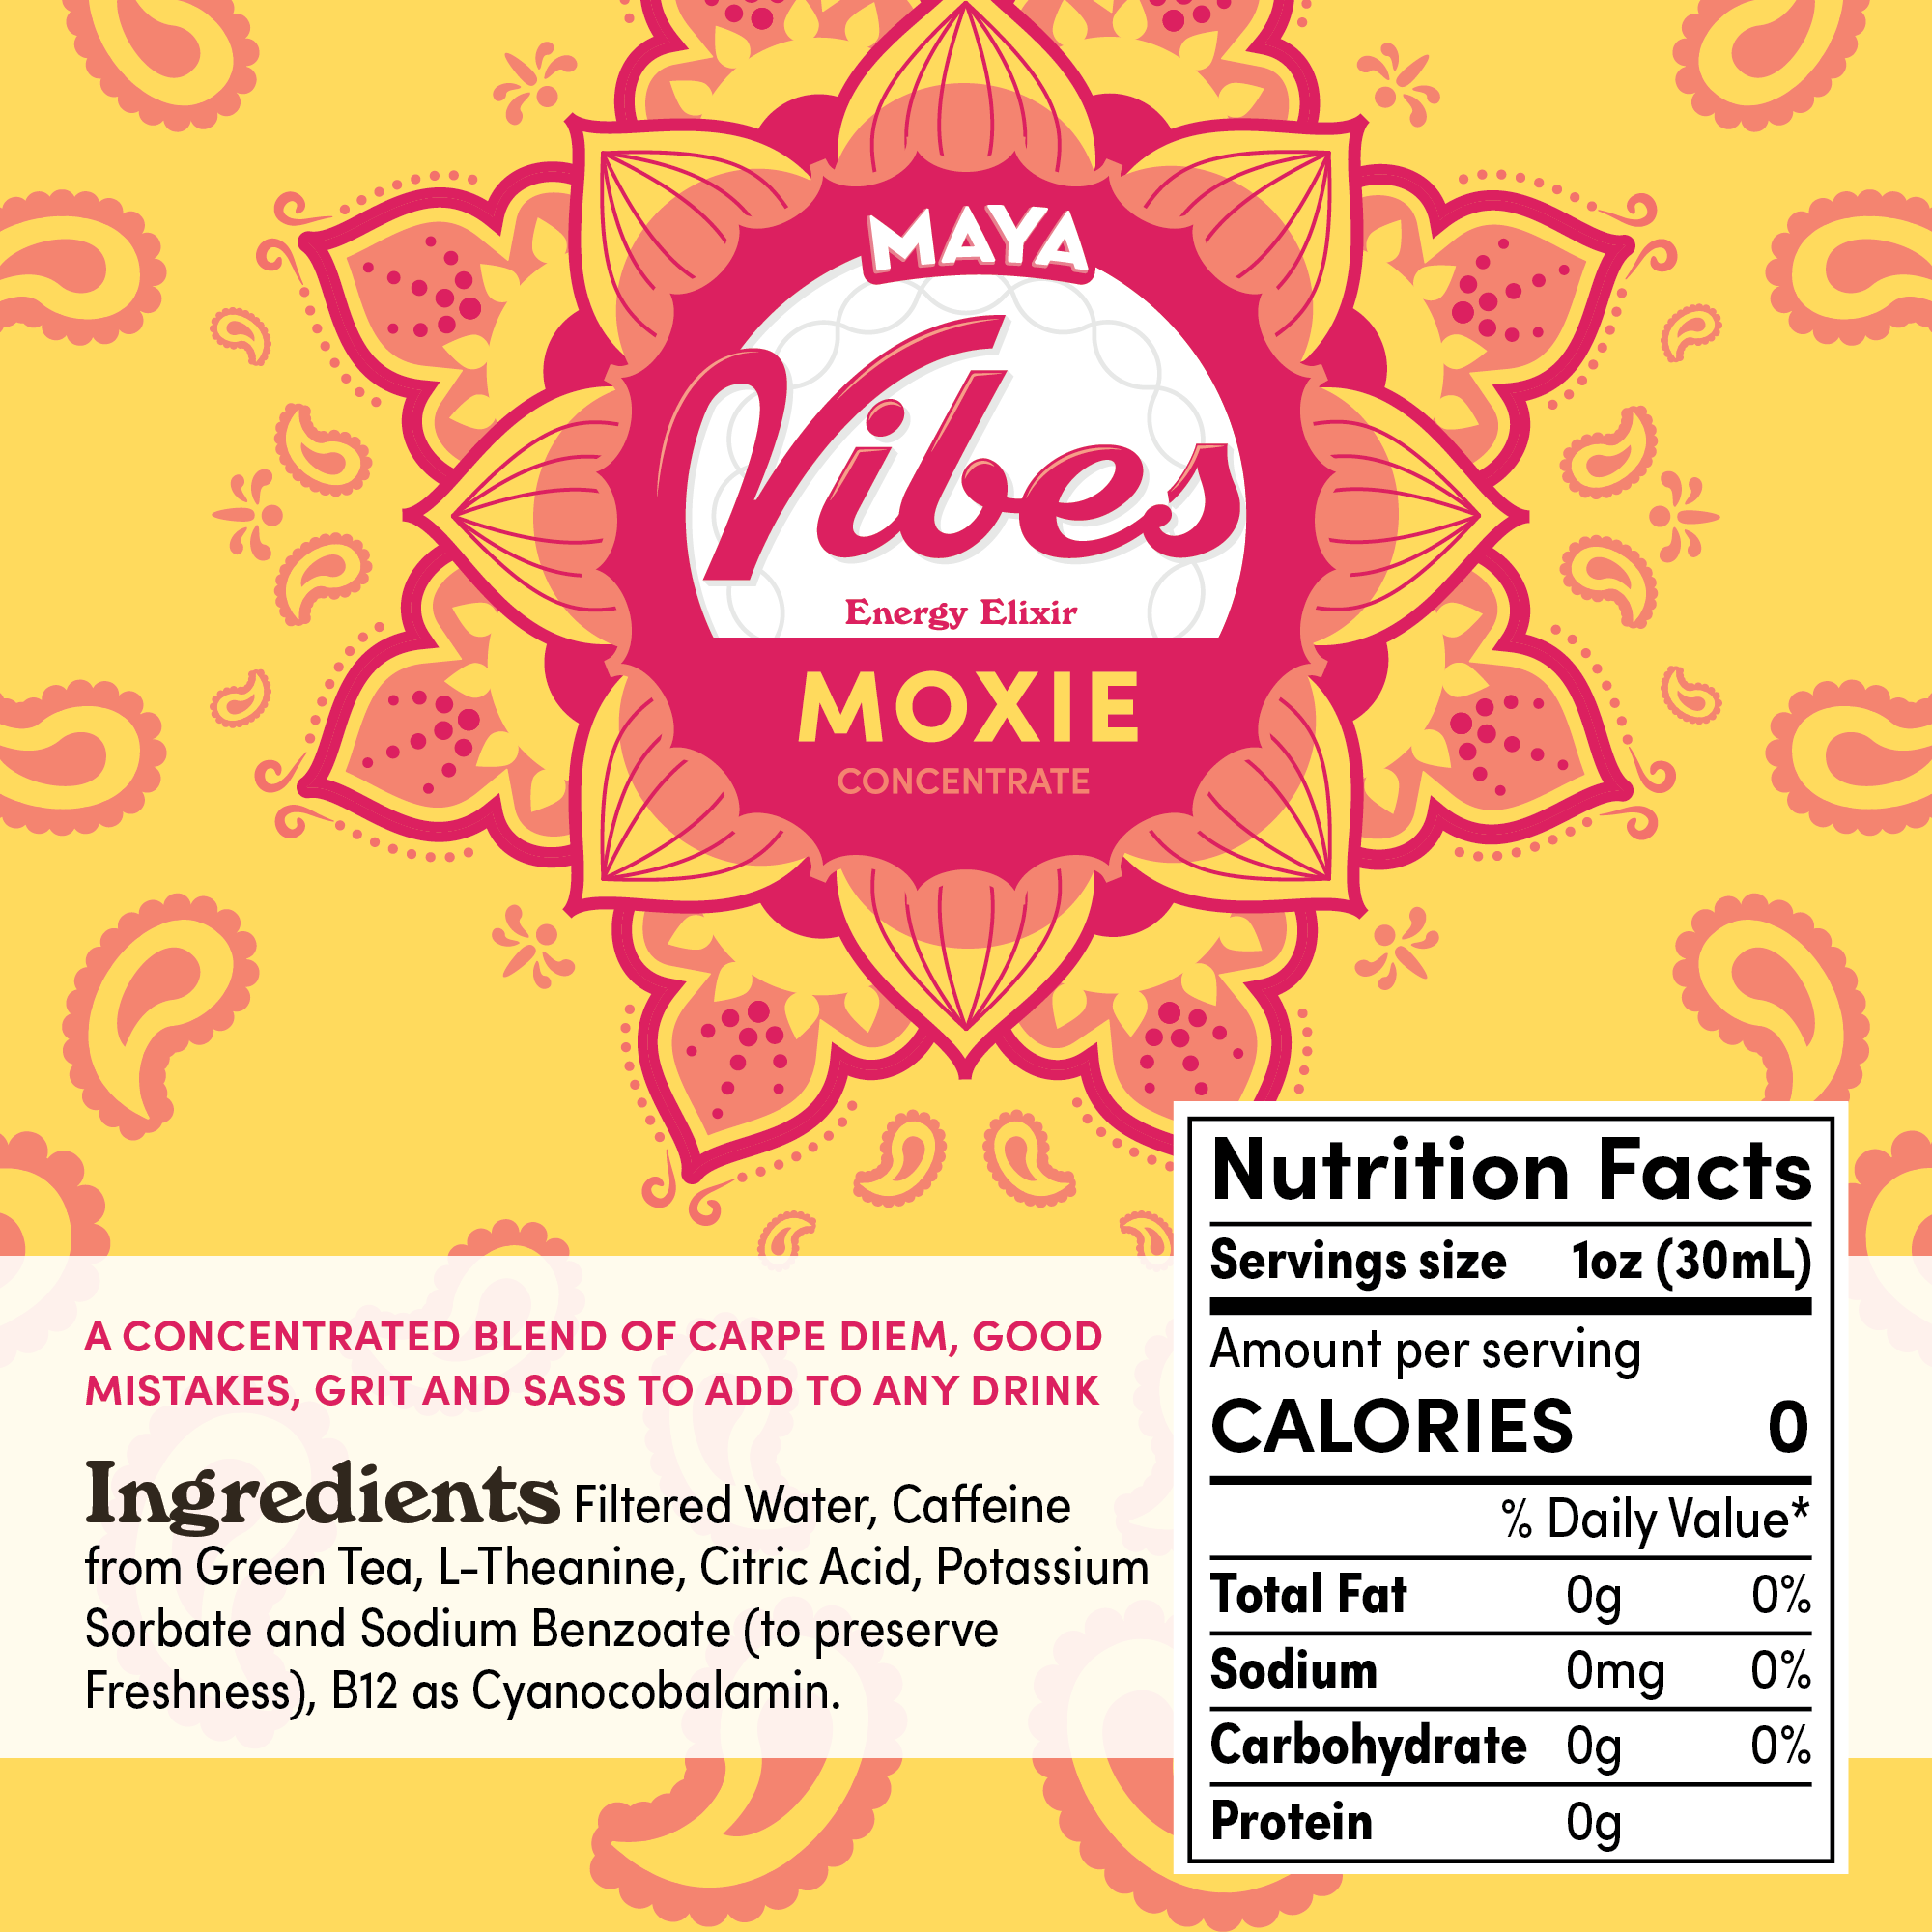 Maya Vibes Moxie